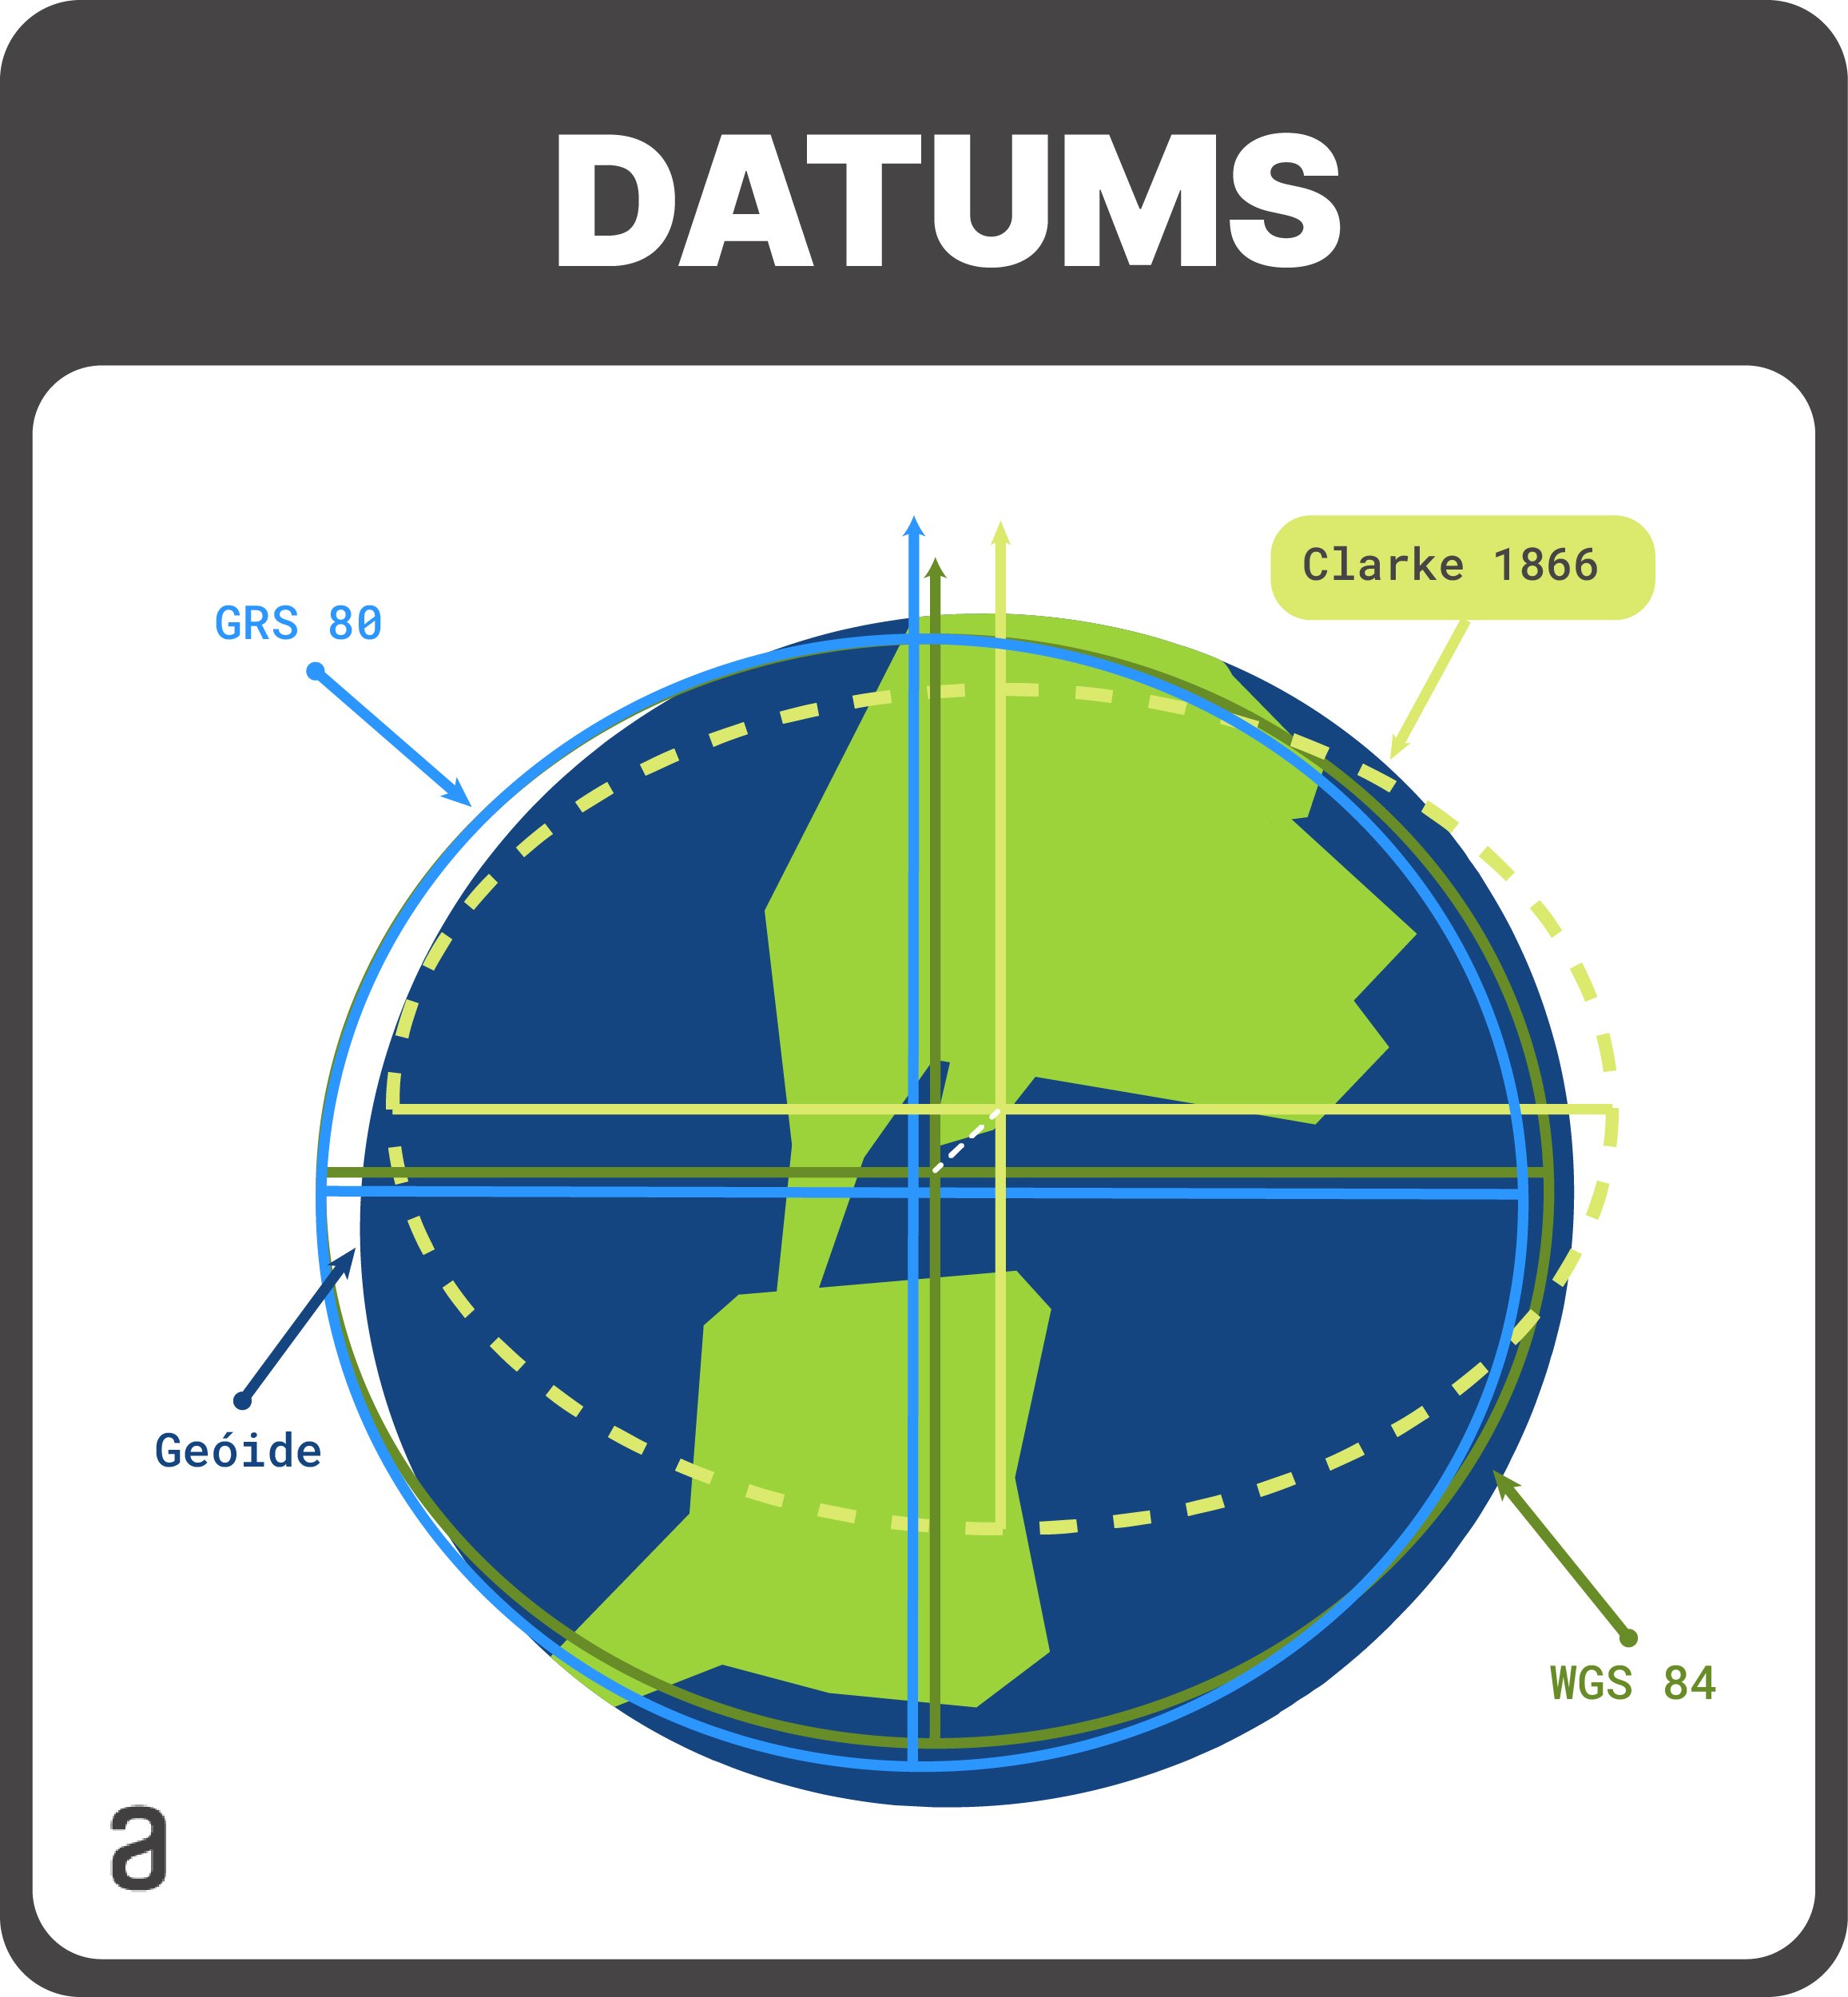 Datums globais em comparação com a Terra. São mostrados os datums GRS 80 e WGS 84, ambos globais. Também é mostrado o datum Clarke 1866 que é um exemplo de datum local. Por fim, é mostrado o geóide que corresponde a superfície dos oceanos.